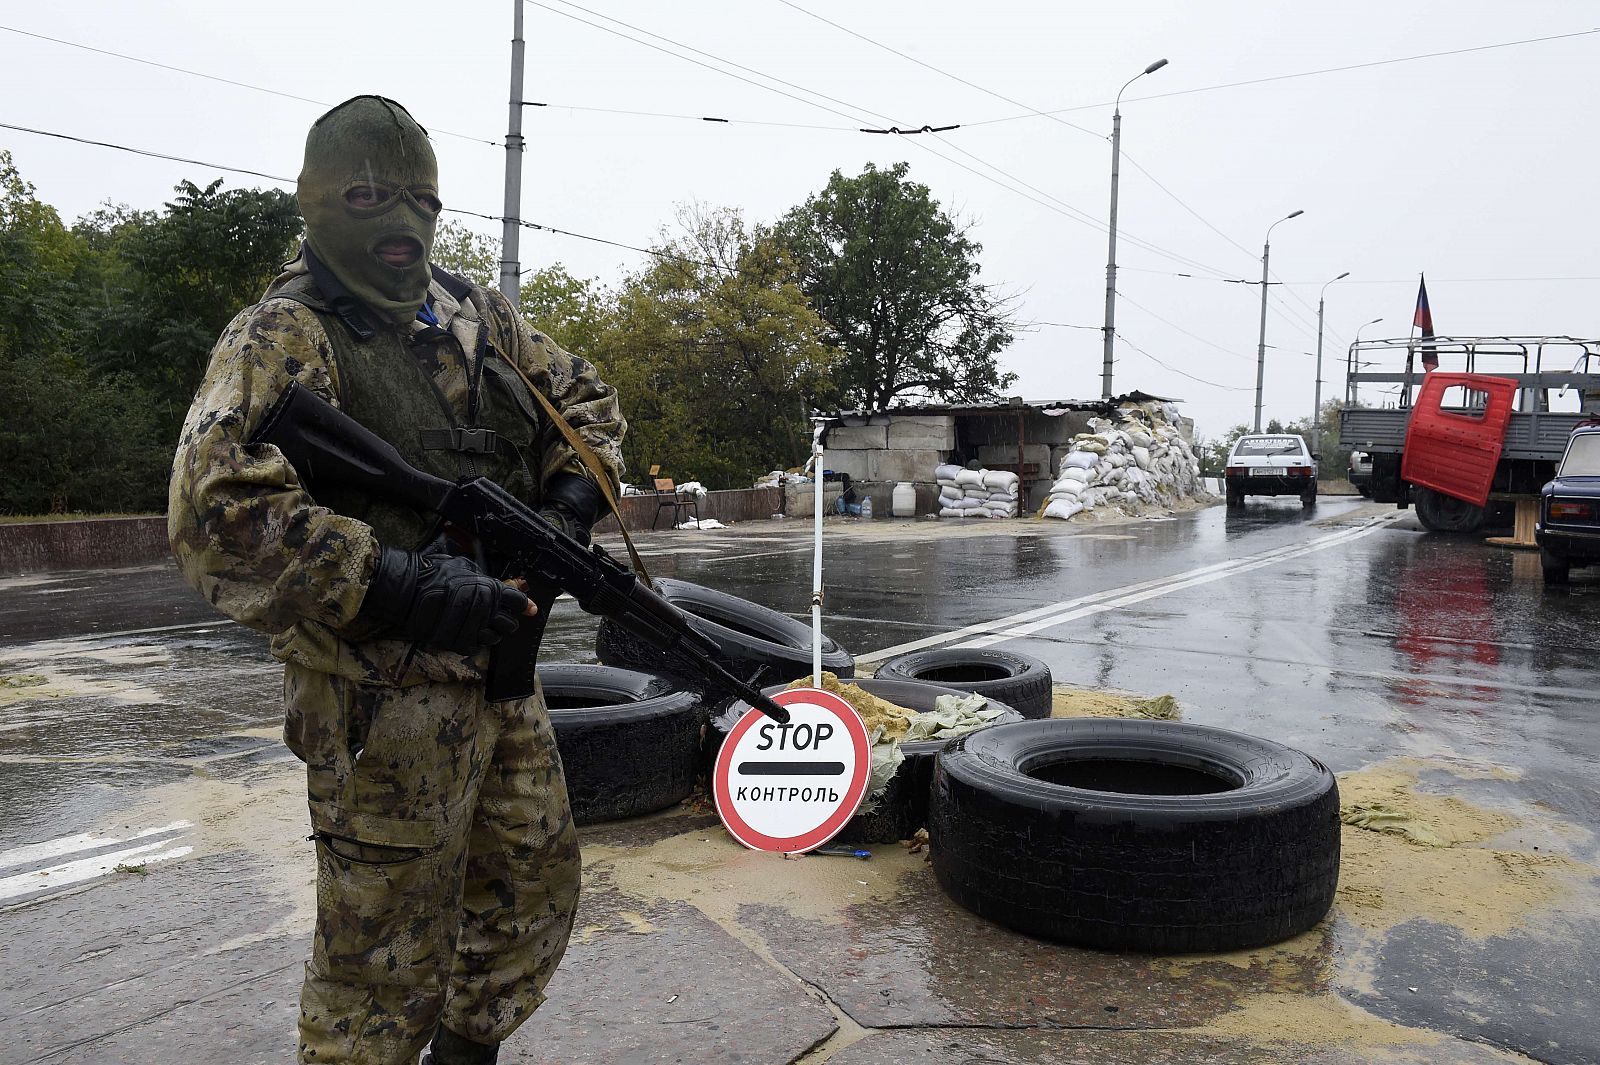 Un separatista prorruso monta guardia en una carretera cerca del aeropuerto de Donetsk, este de Ucrania